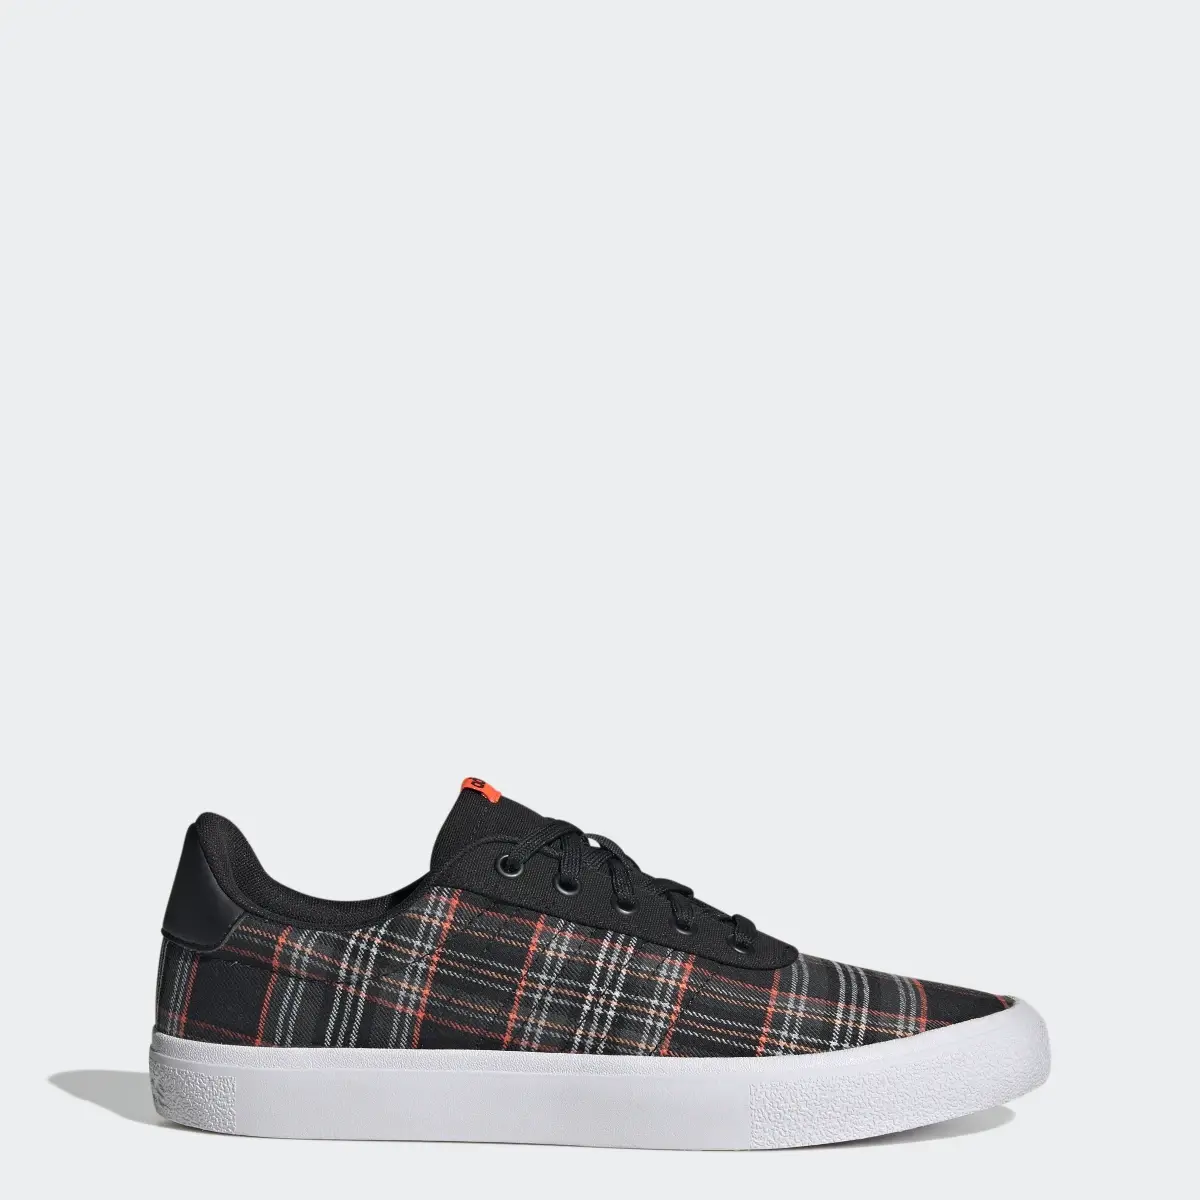 Adidas Vulc Raid3r Lifestyle Skateboarding 3-Stripes Branding Shoes. 1